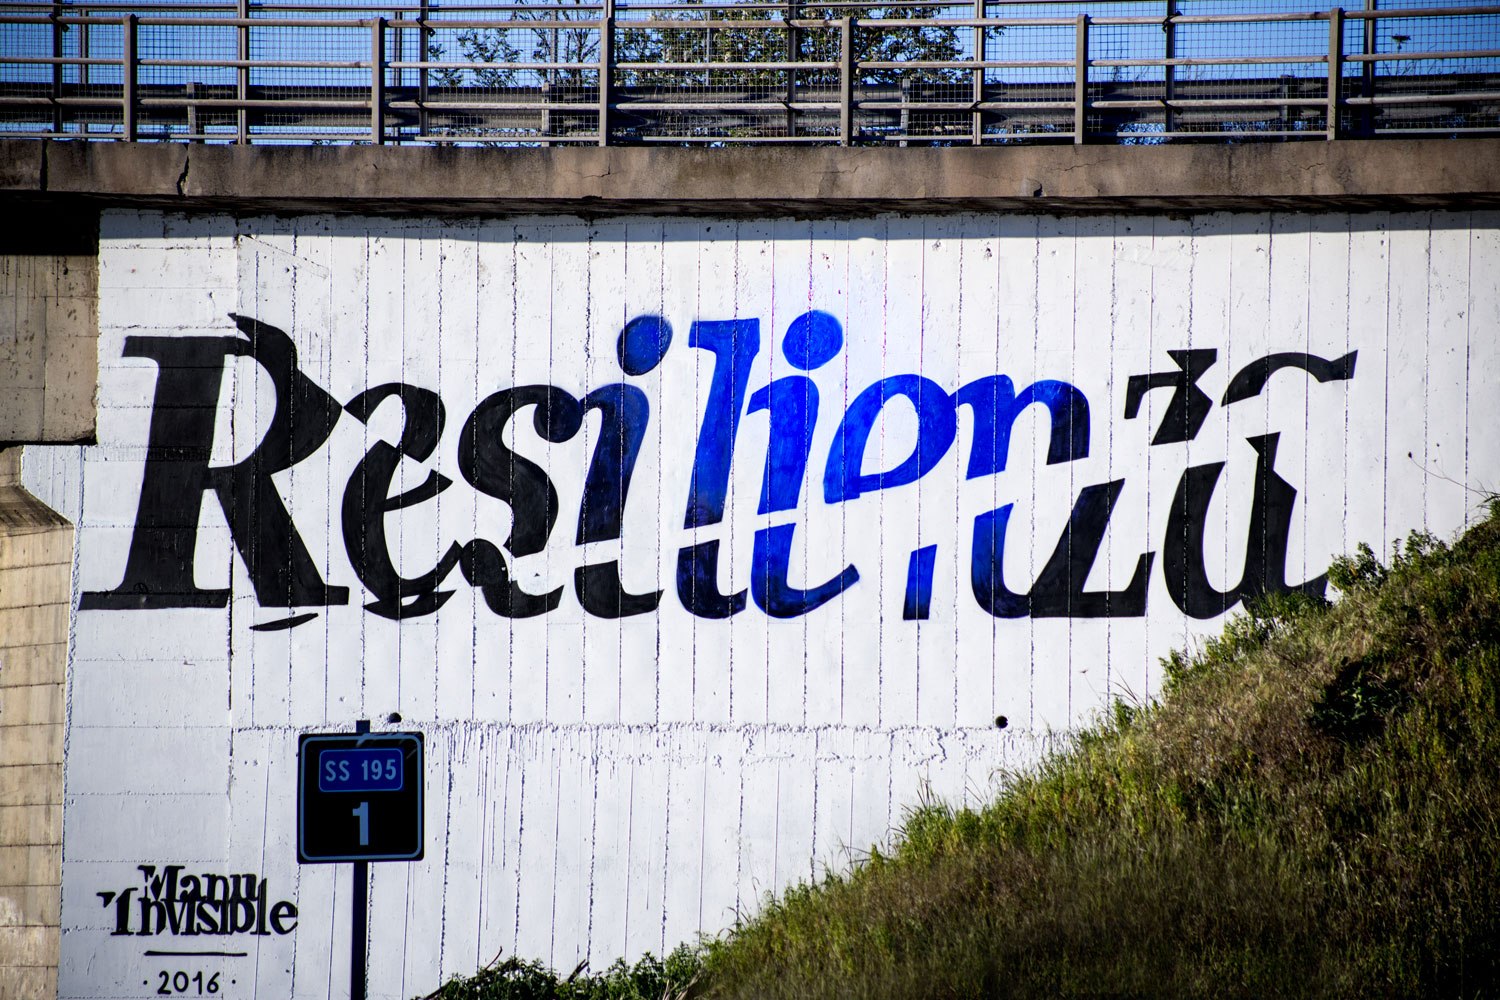 ''Resilienza'' Spray e quarzo su muro 8 x 4,5 m – Cagliari ss. 195 - 2016